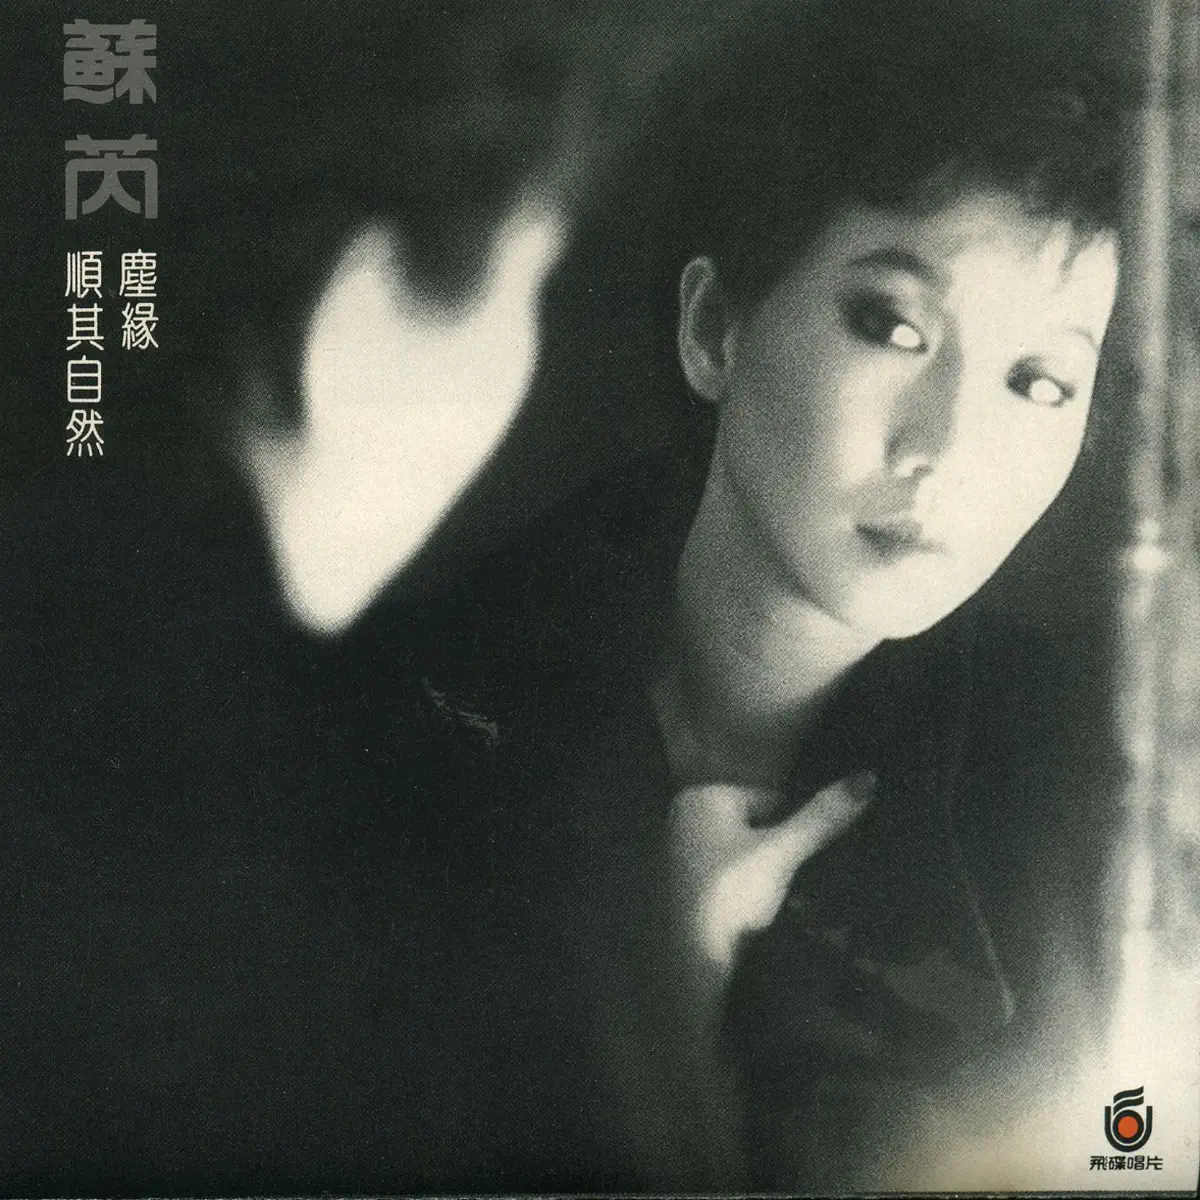 苏芮 - 苏芮III: 尘缘 (1989) [iTunes Plus AAC M4A]-新房子